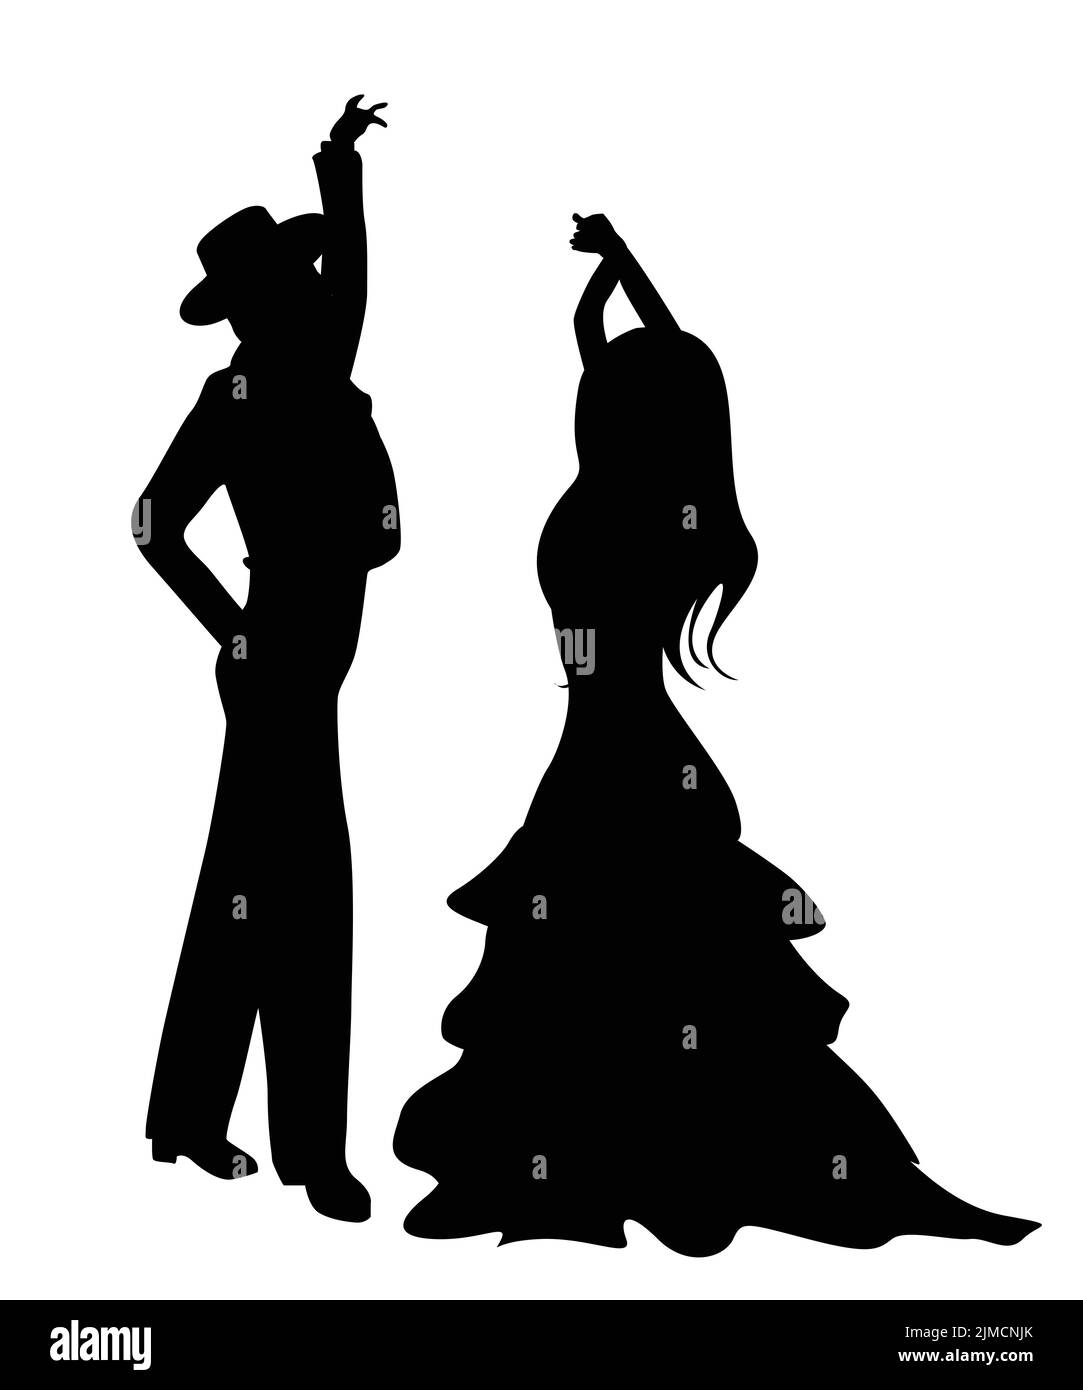 Danseurs de Flamenco silhouettes, isolés et des objets groupés sur fond blanc Banque D'Images